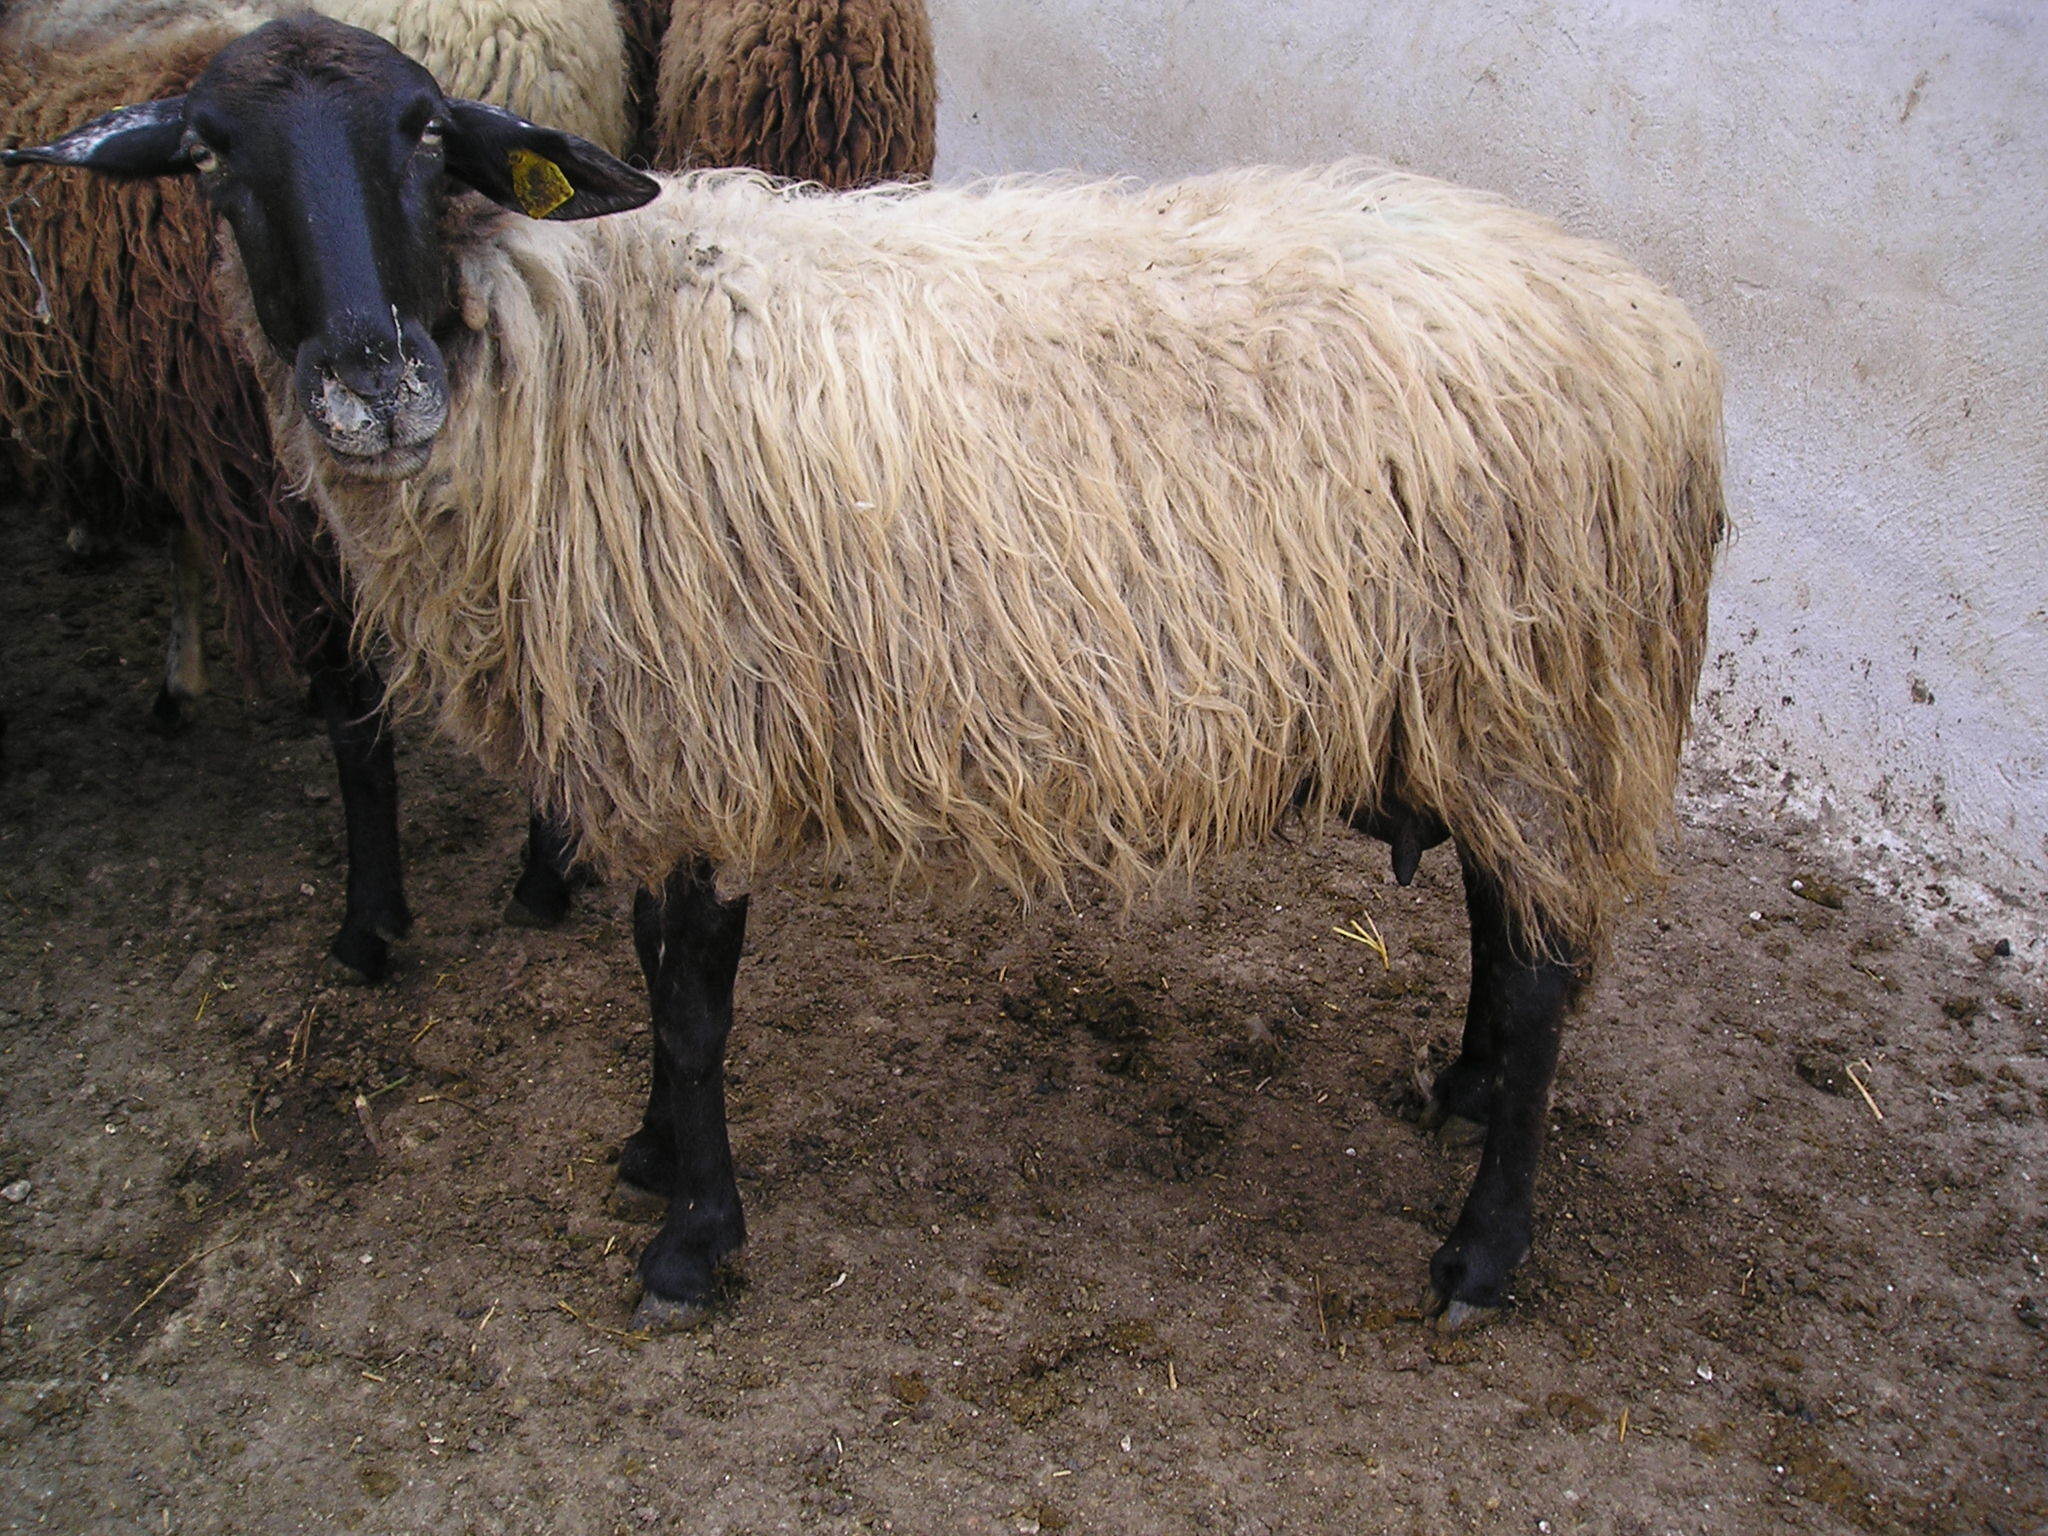 Μαγνησία: Κατακρεούργησε πρόβατο σε αυλή σπιτιού – Η άγνωστη εισβολή που είχε προηγηθεί